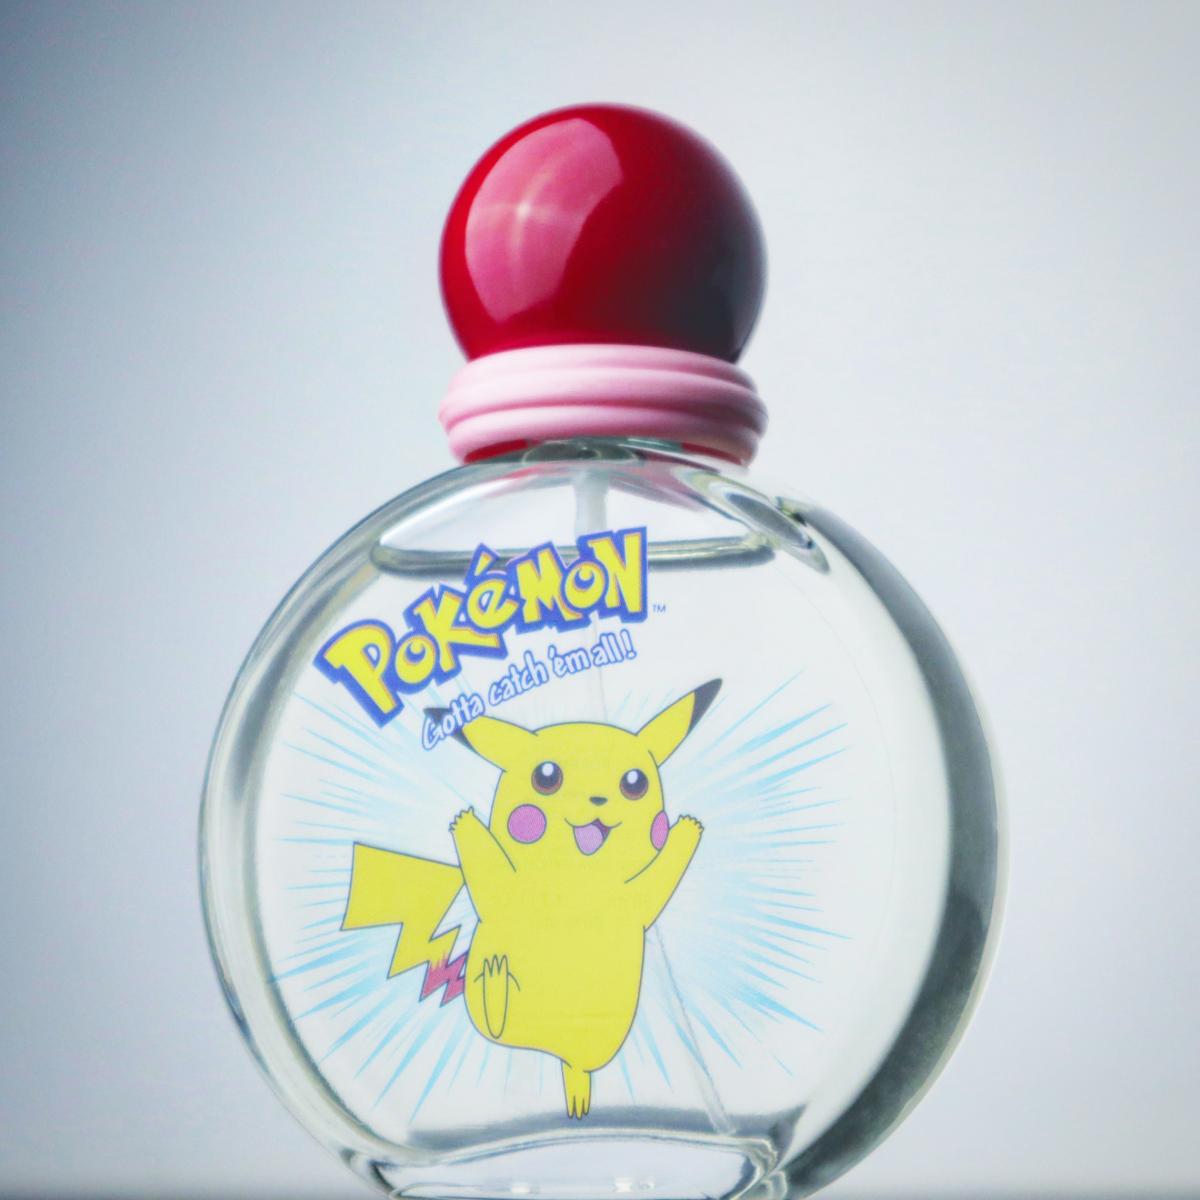 Pokemon Air-Val International аромат — аромат для мужчин и женщин